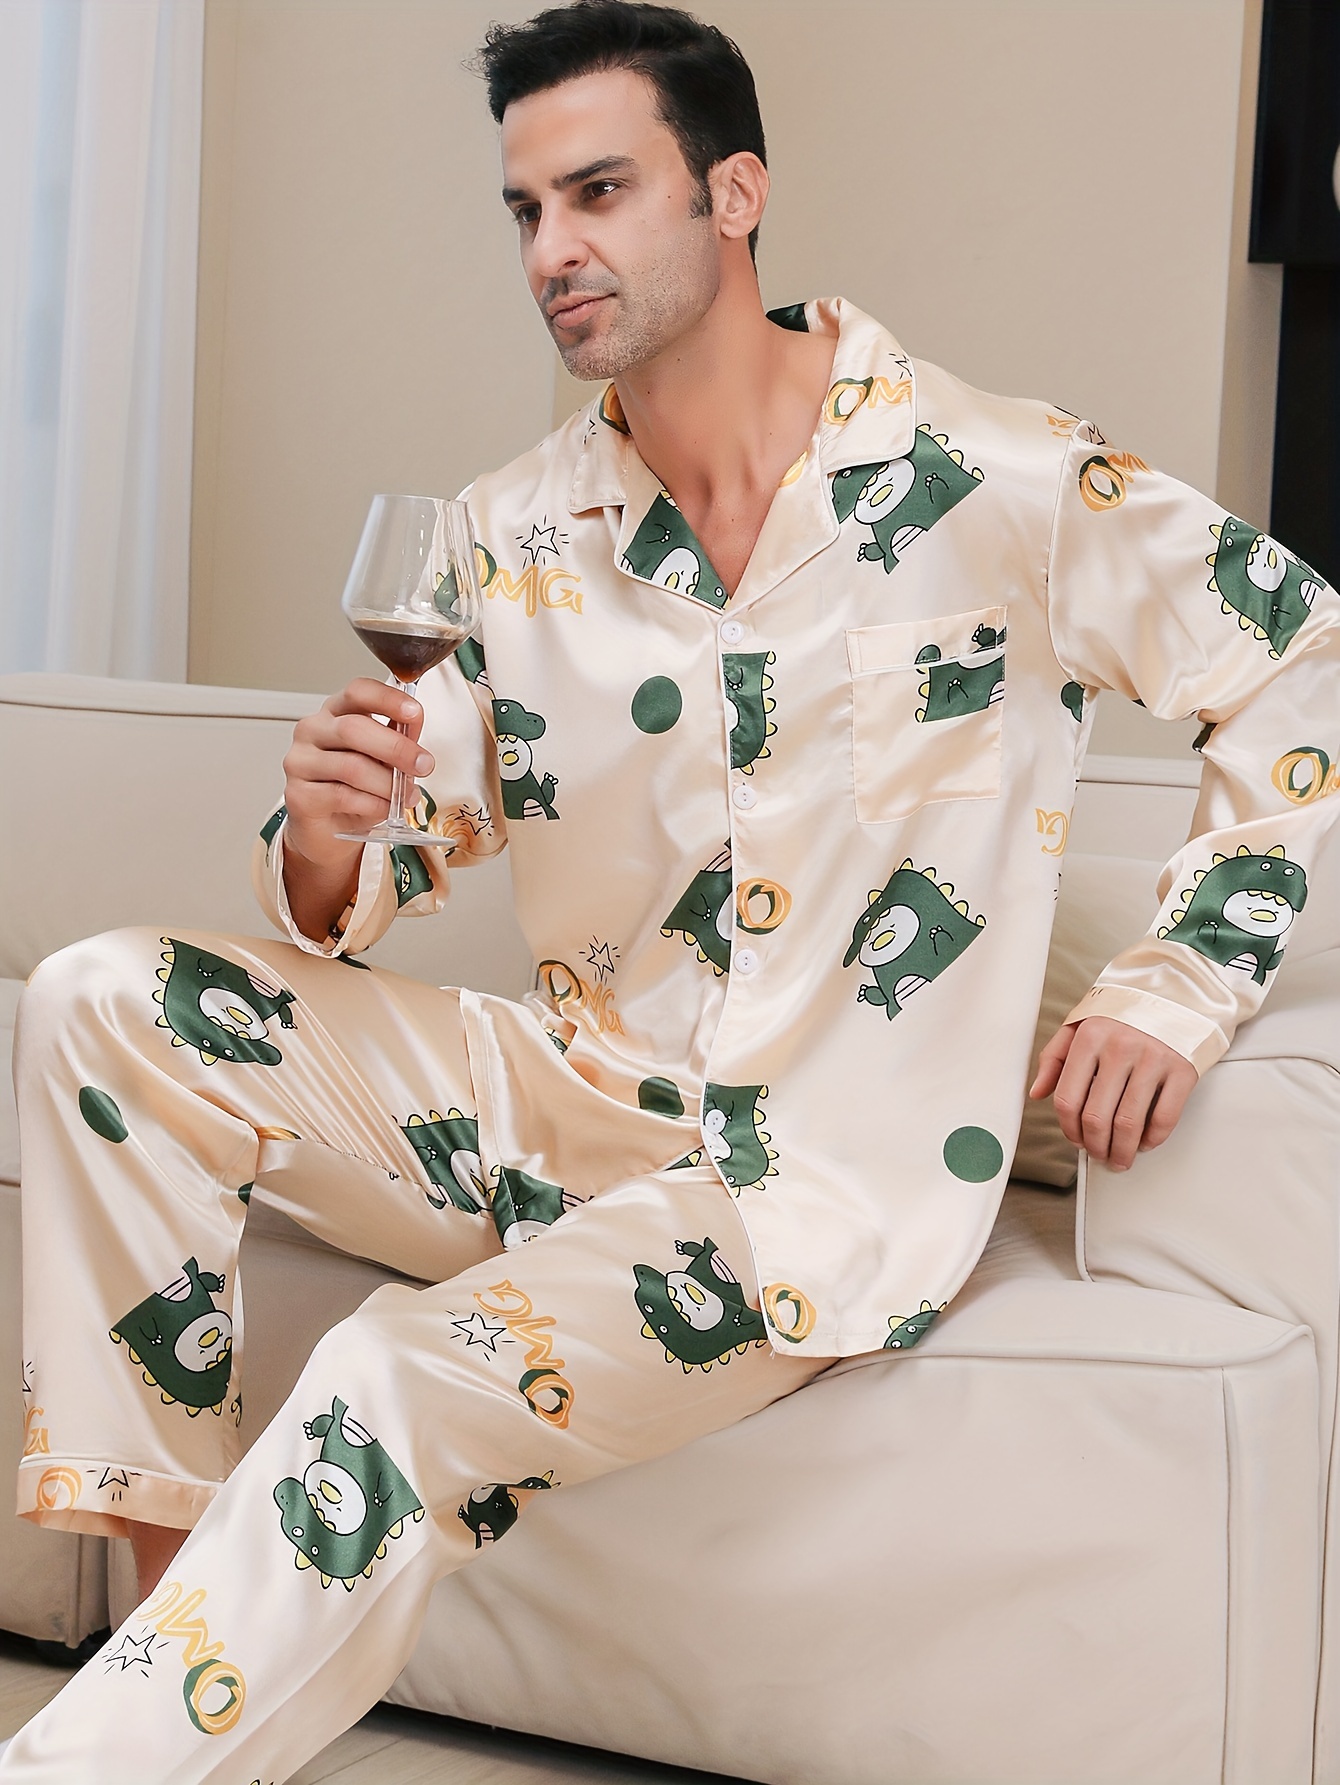 Pantalones Pijama Hombre Pantalones Divertidos Diseño - Temu